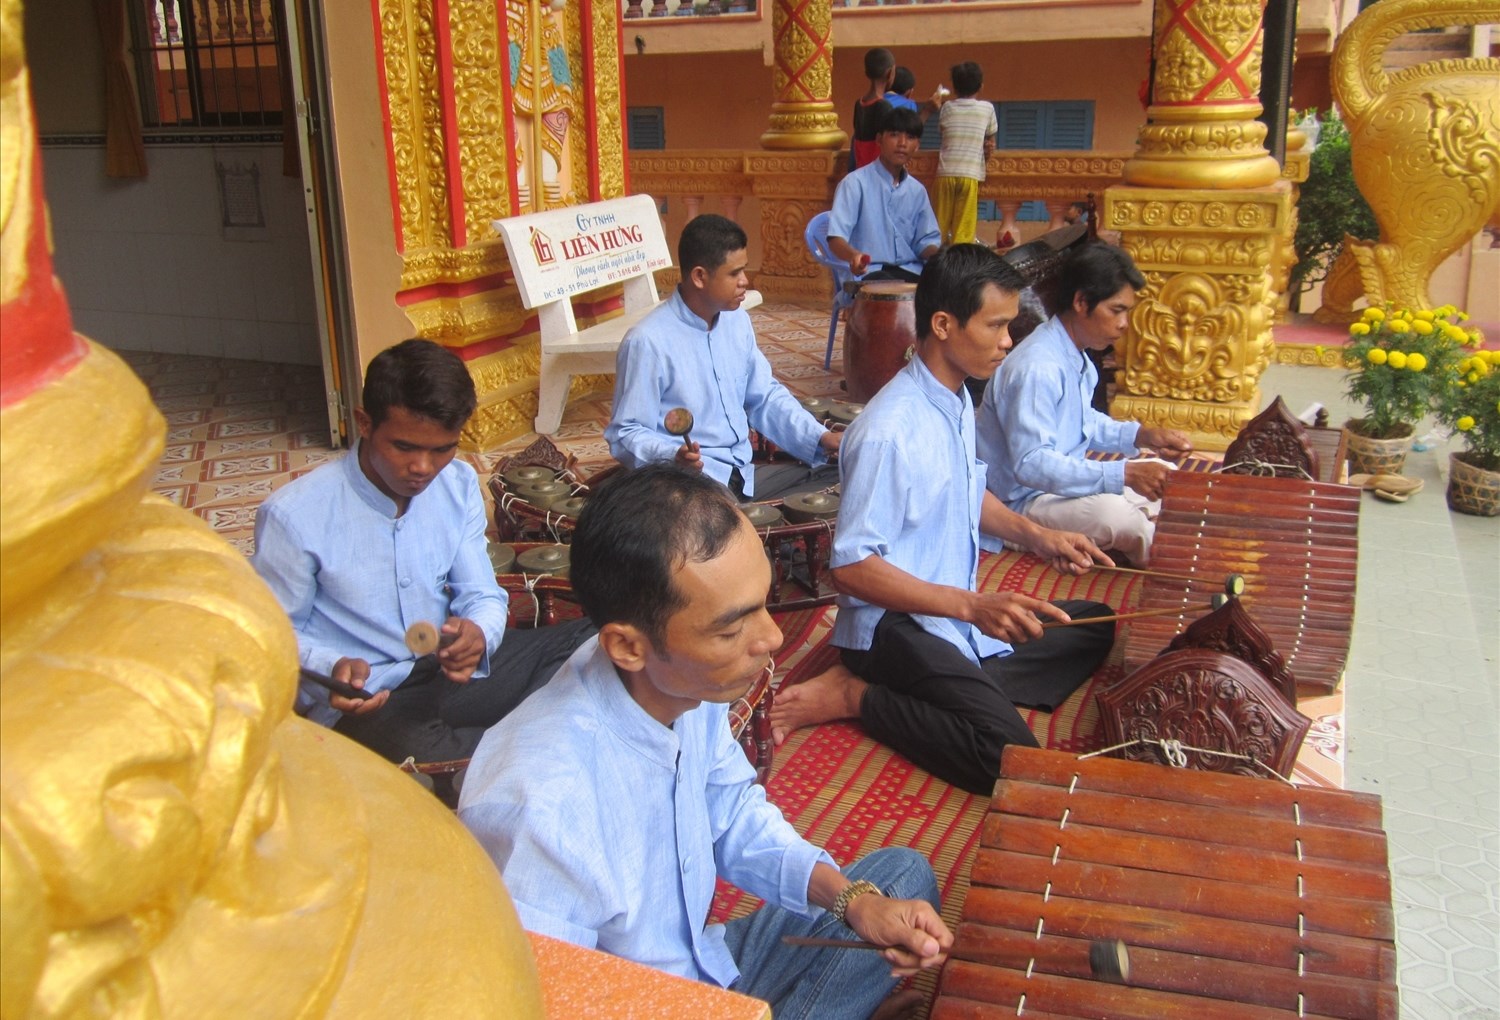 Đội nhạc ngũ âm chùa Chrôy Tưm Kandal (xã Đại Tâm, huyện Mỹ Xuyên) biểu diễn phục vụ du khách đến tham quan, chiêm ngưỡng chùa